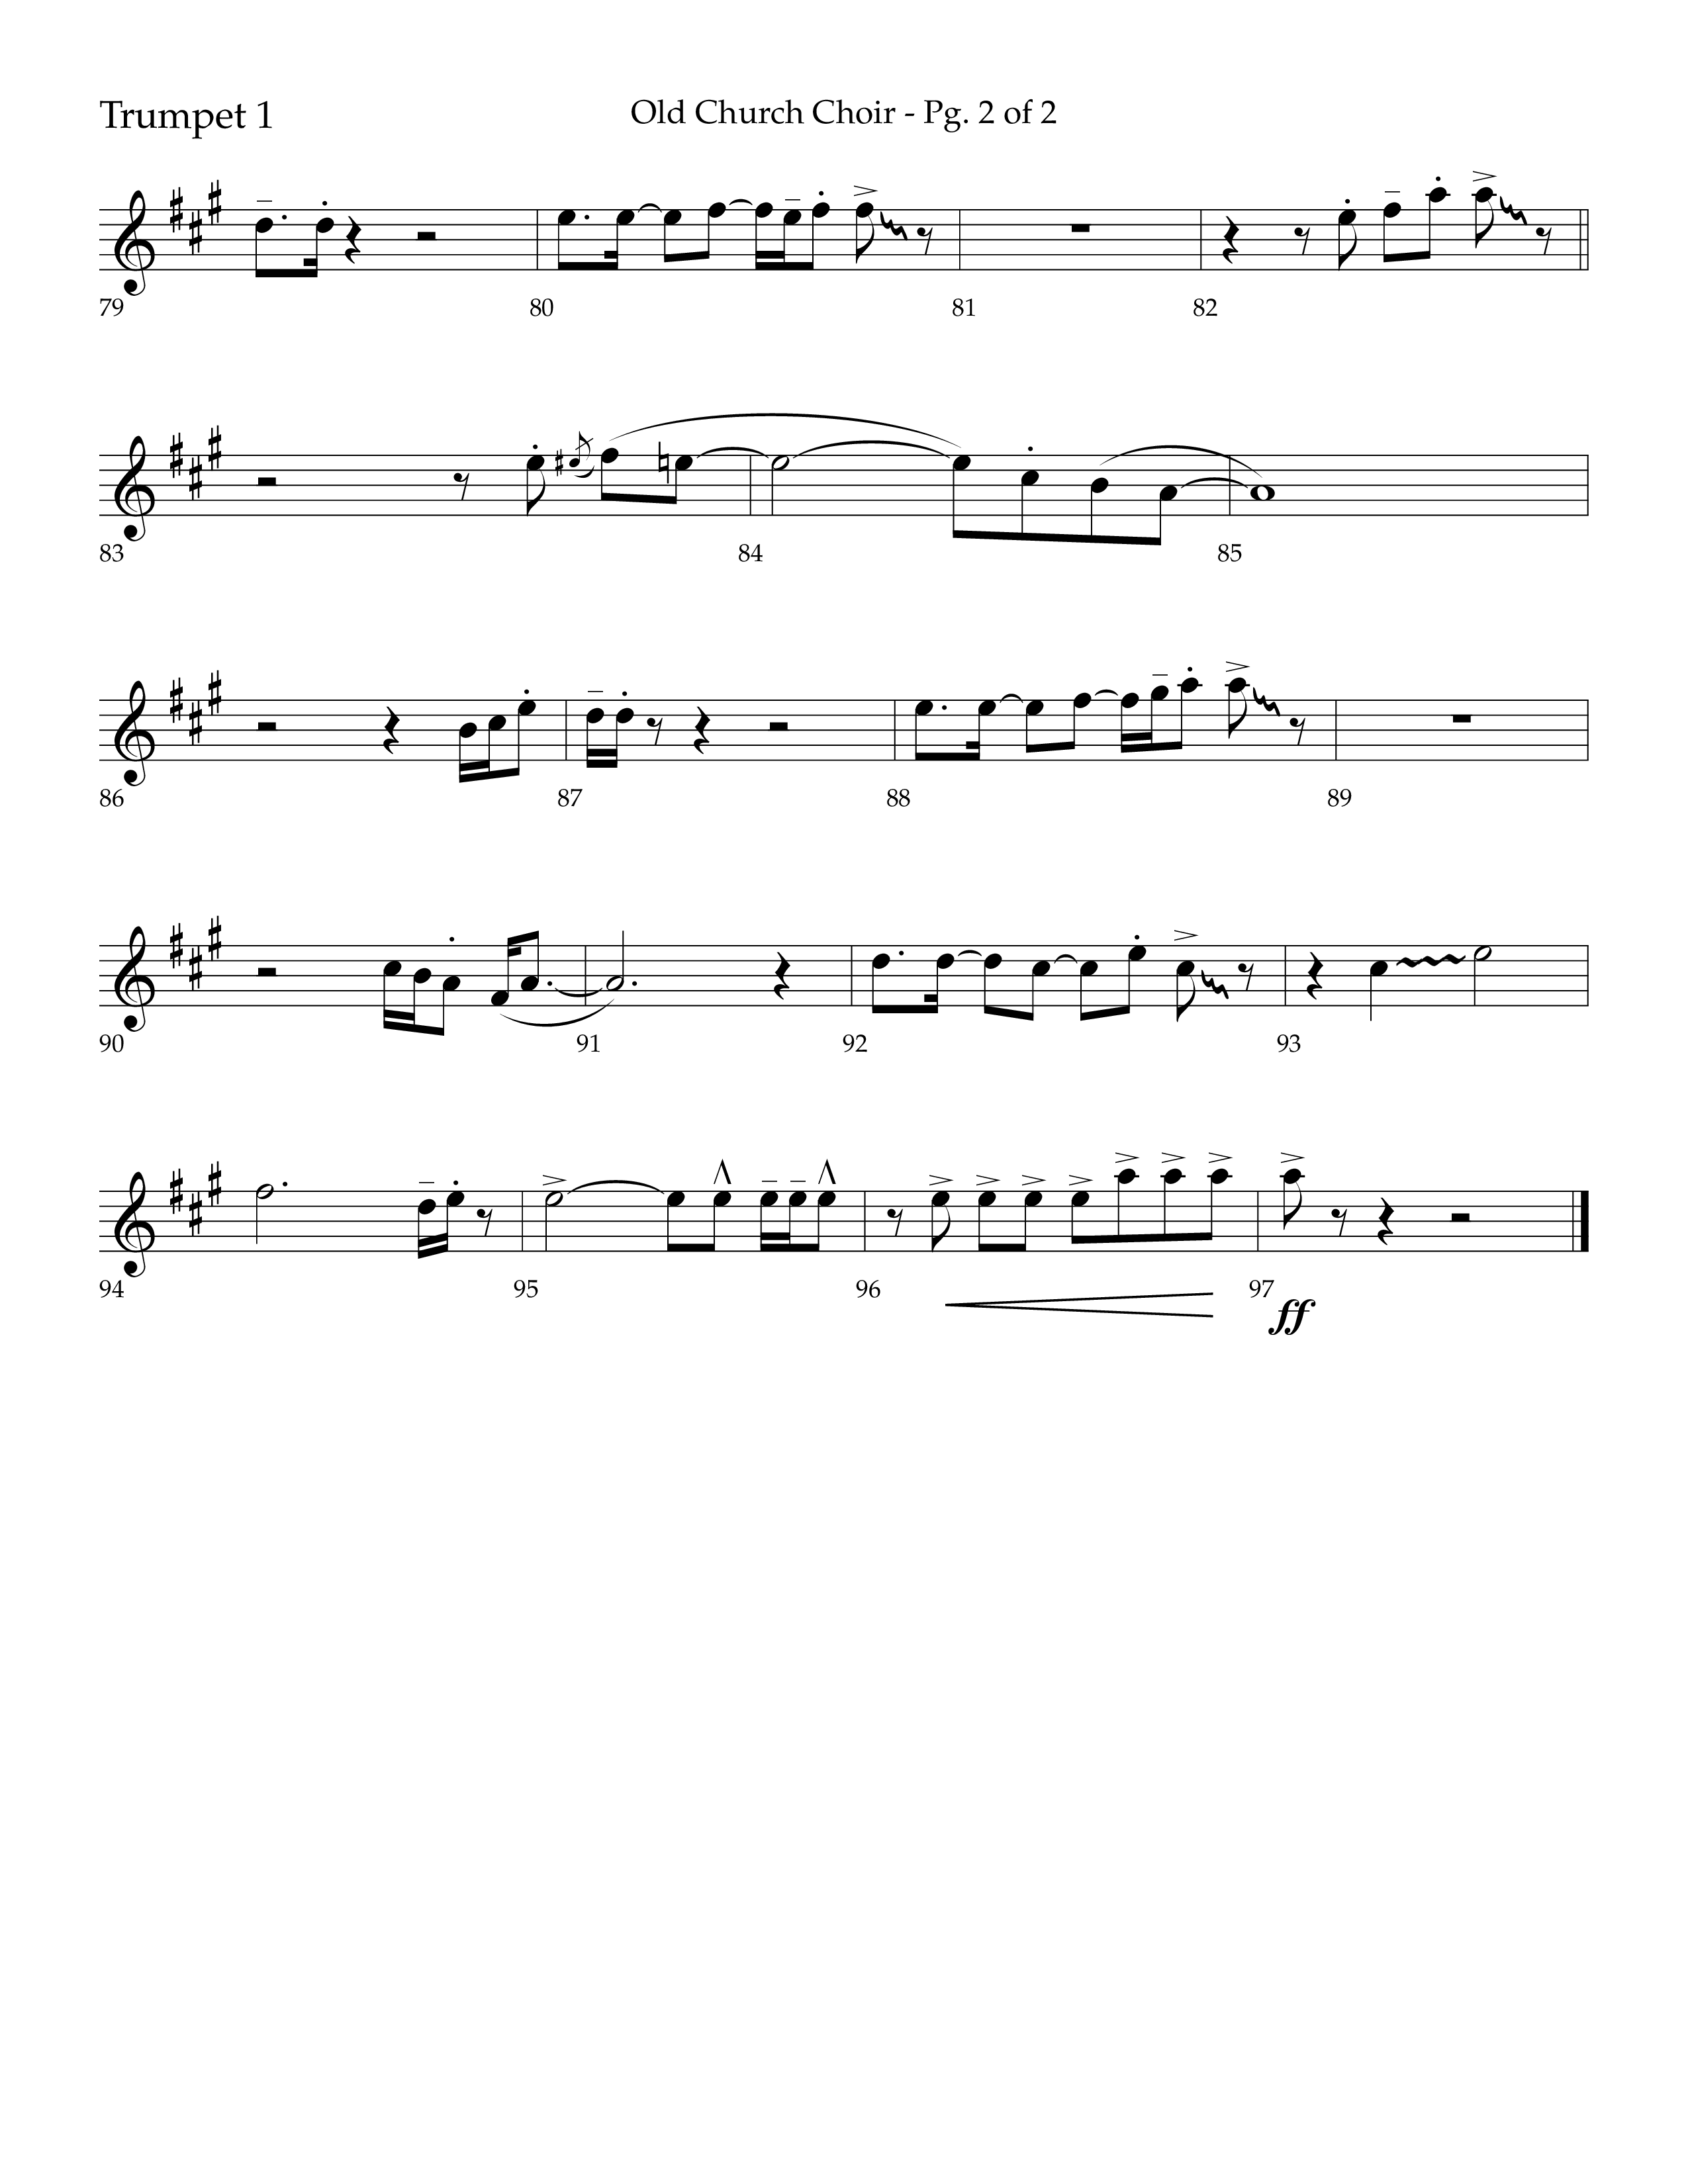 Old Church Choir (Choral Anthem SATB) Trumpet 1 (Lifeway Choral / Arr. Ken Barker / Arr. Craig Adams / Arr. Danny Zaloudik)